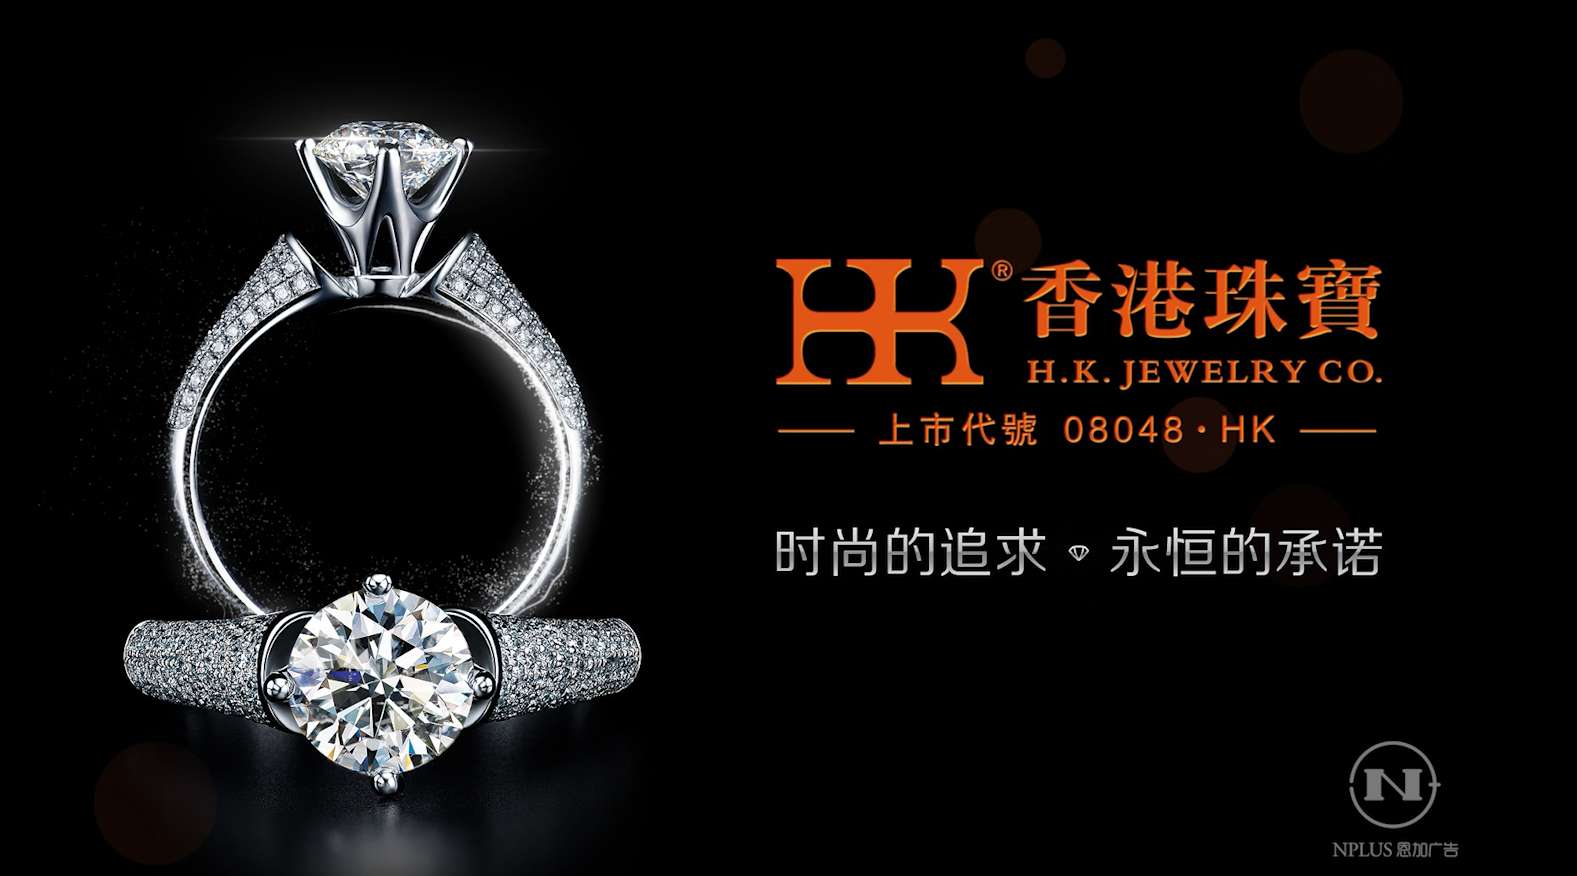 HK香港珠宝5S广告